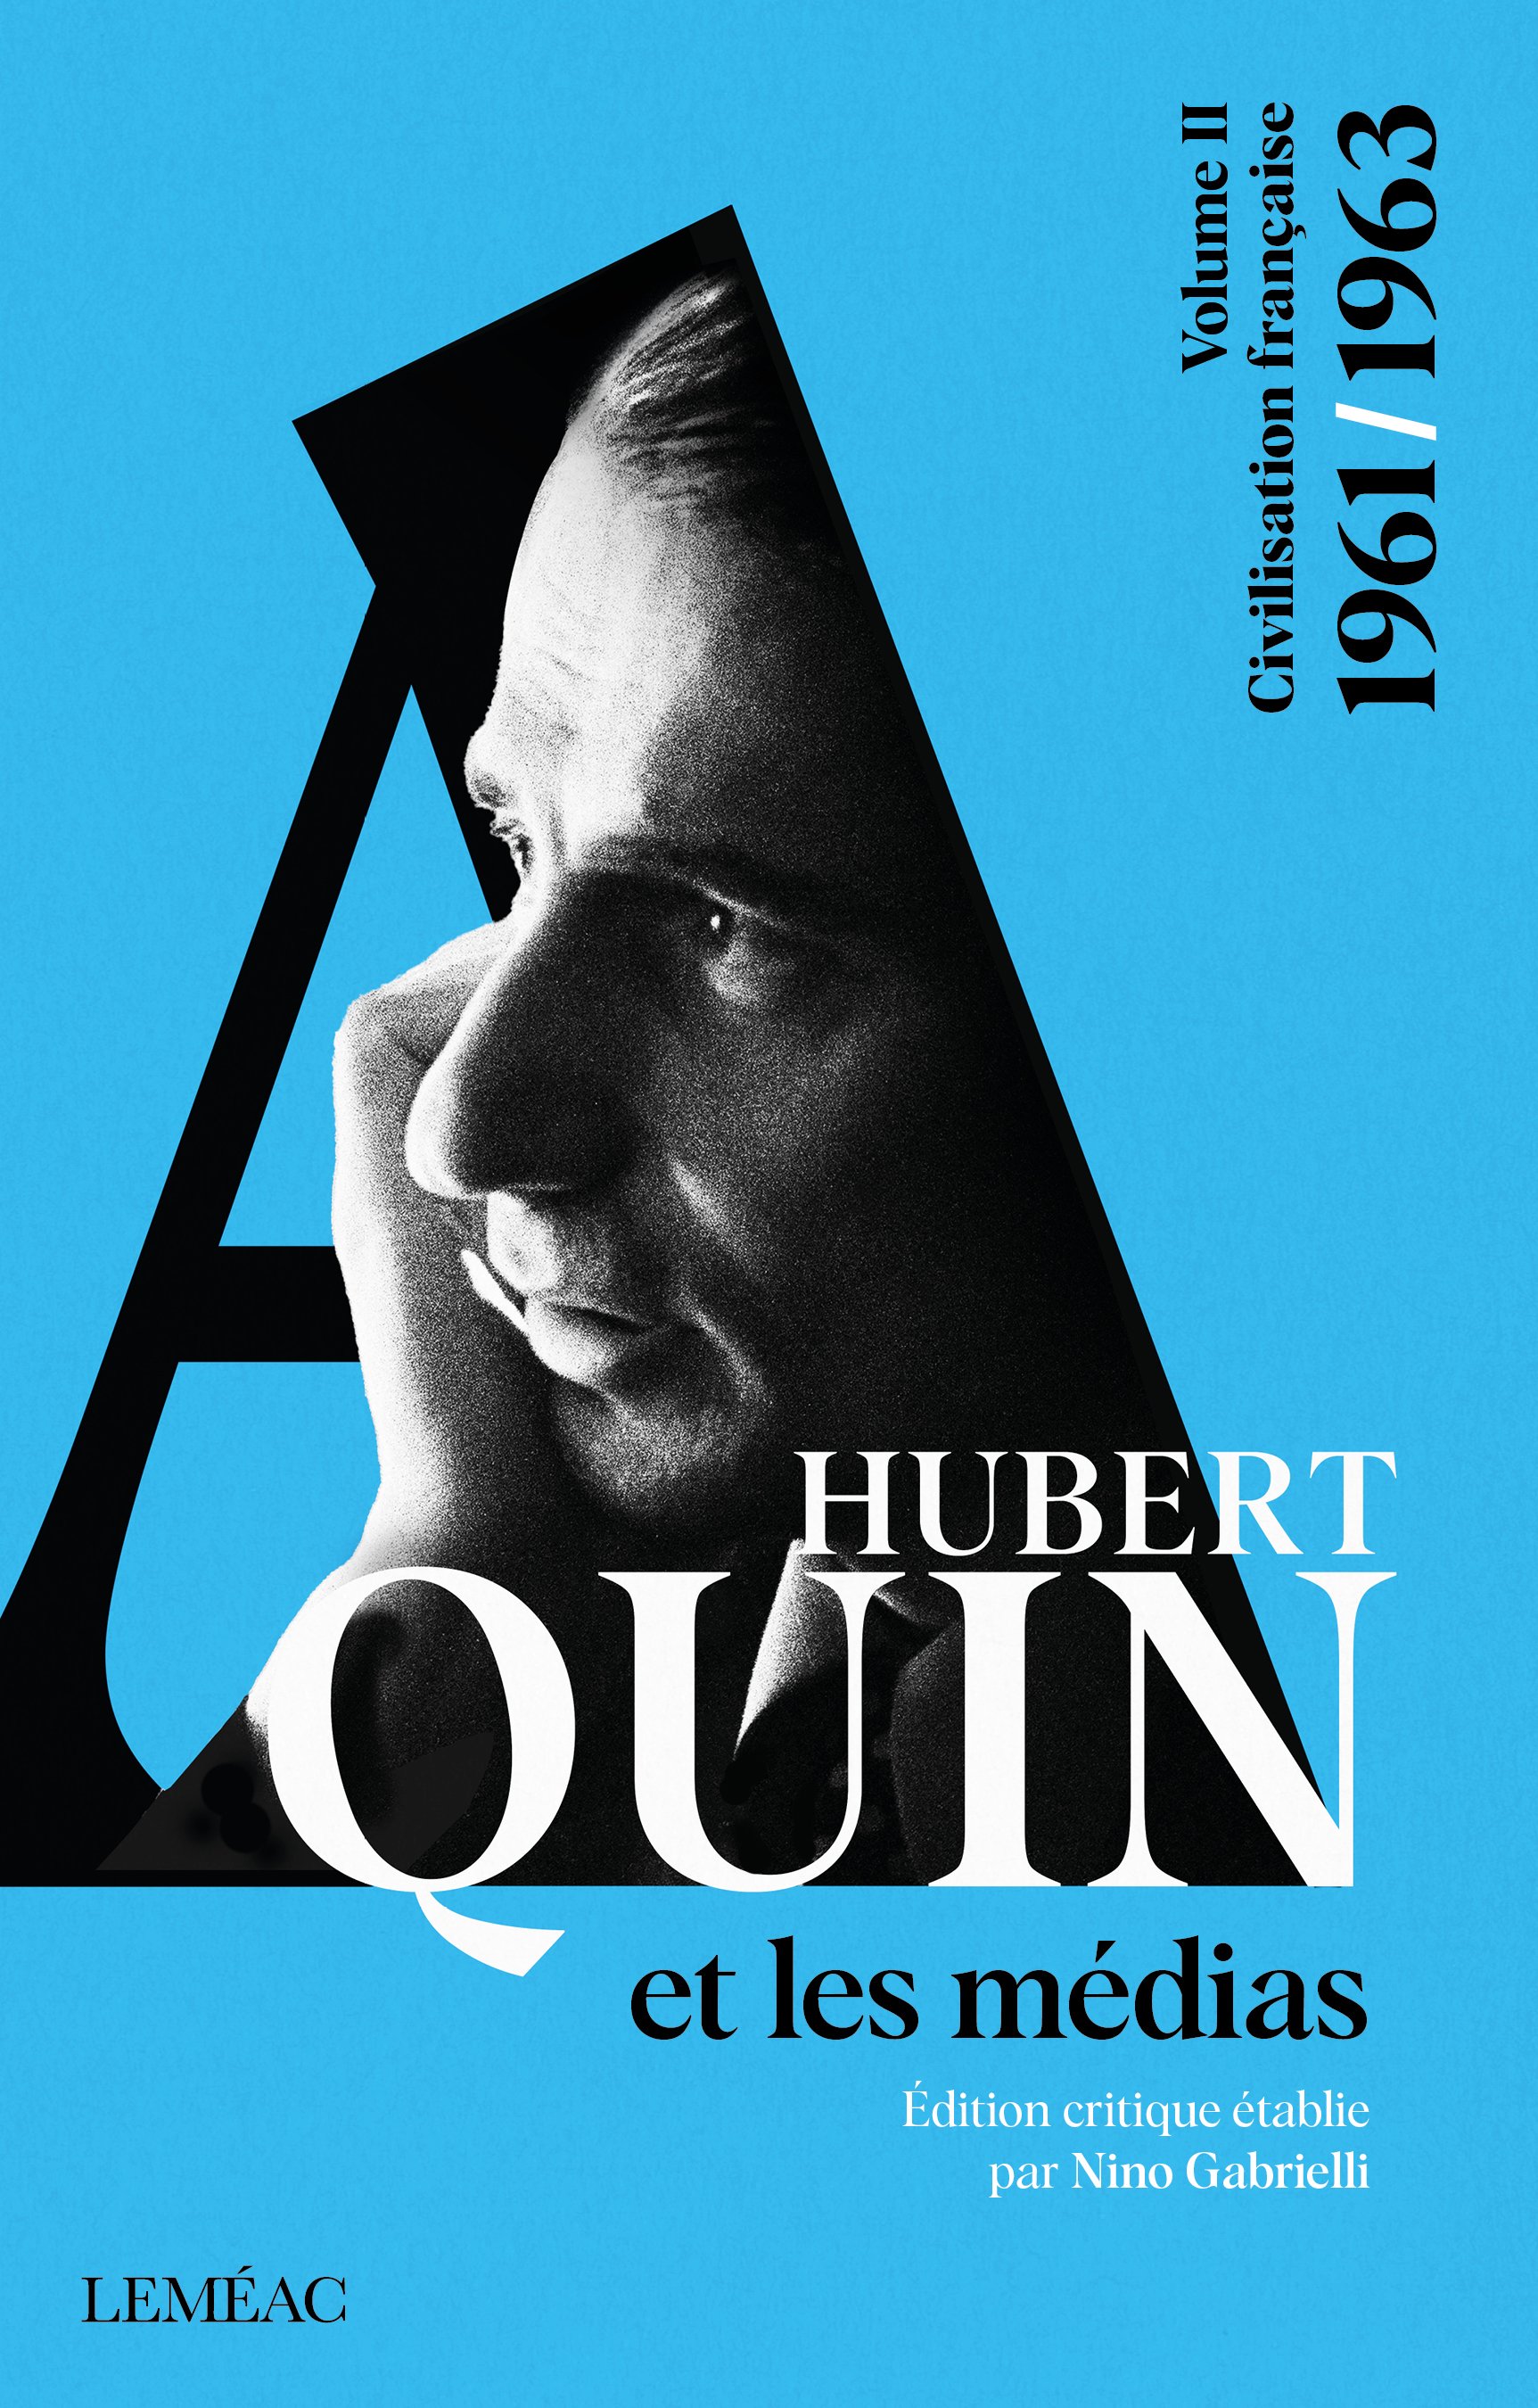 Hubert Aquin et les médias Vol2 C1.jpg